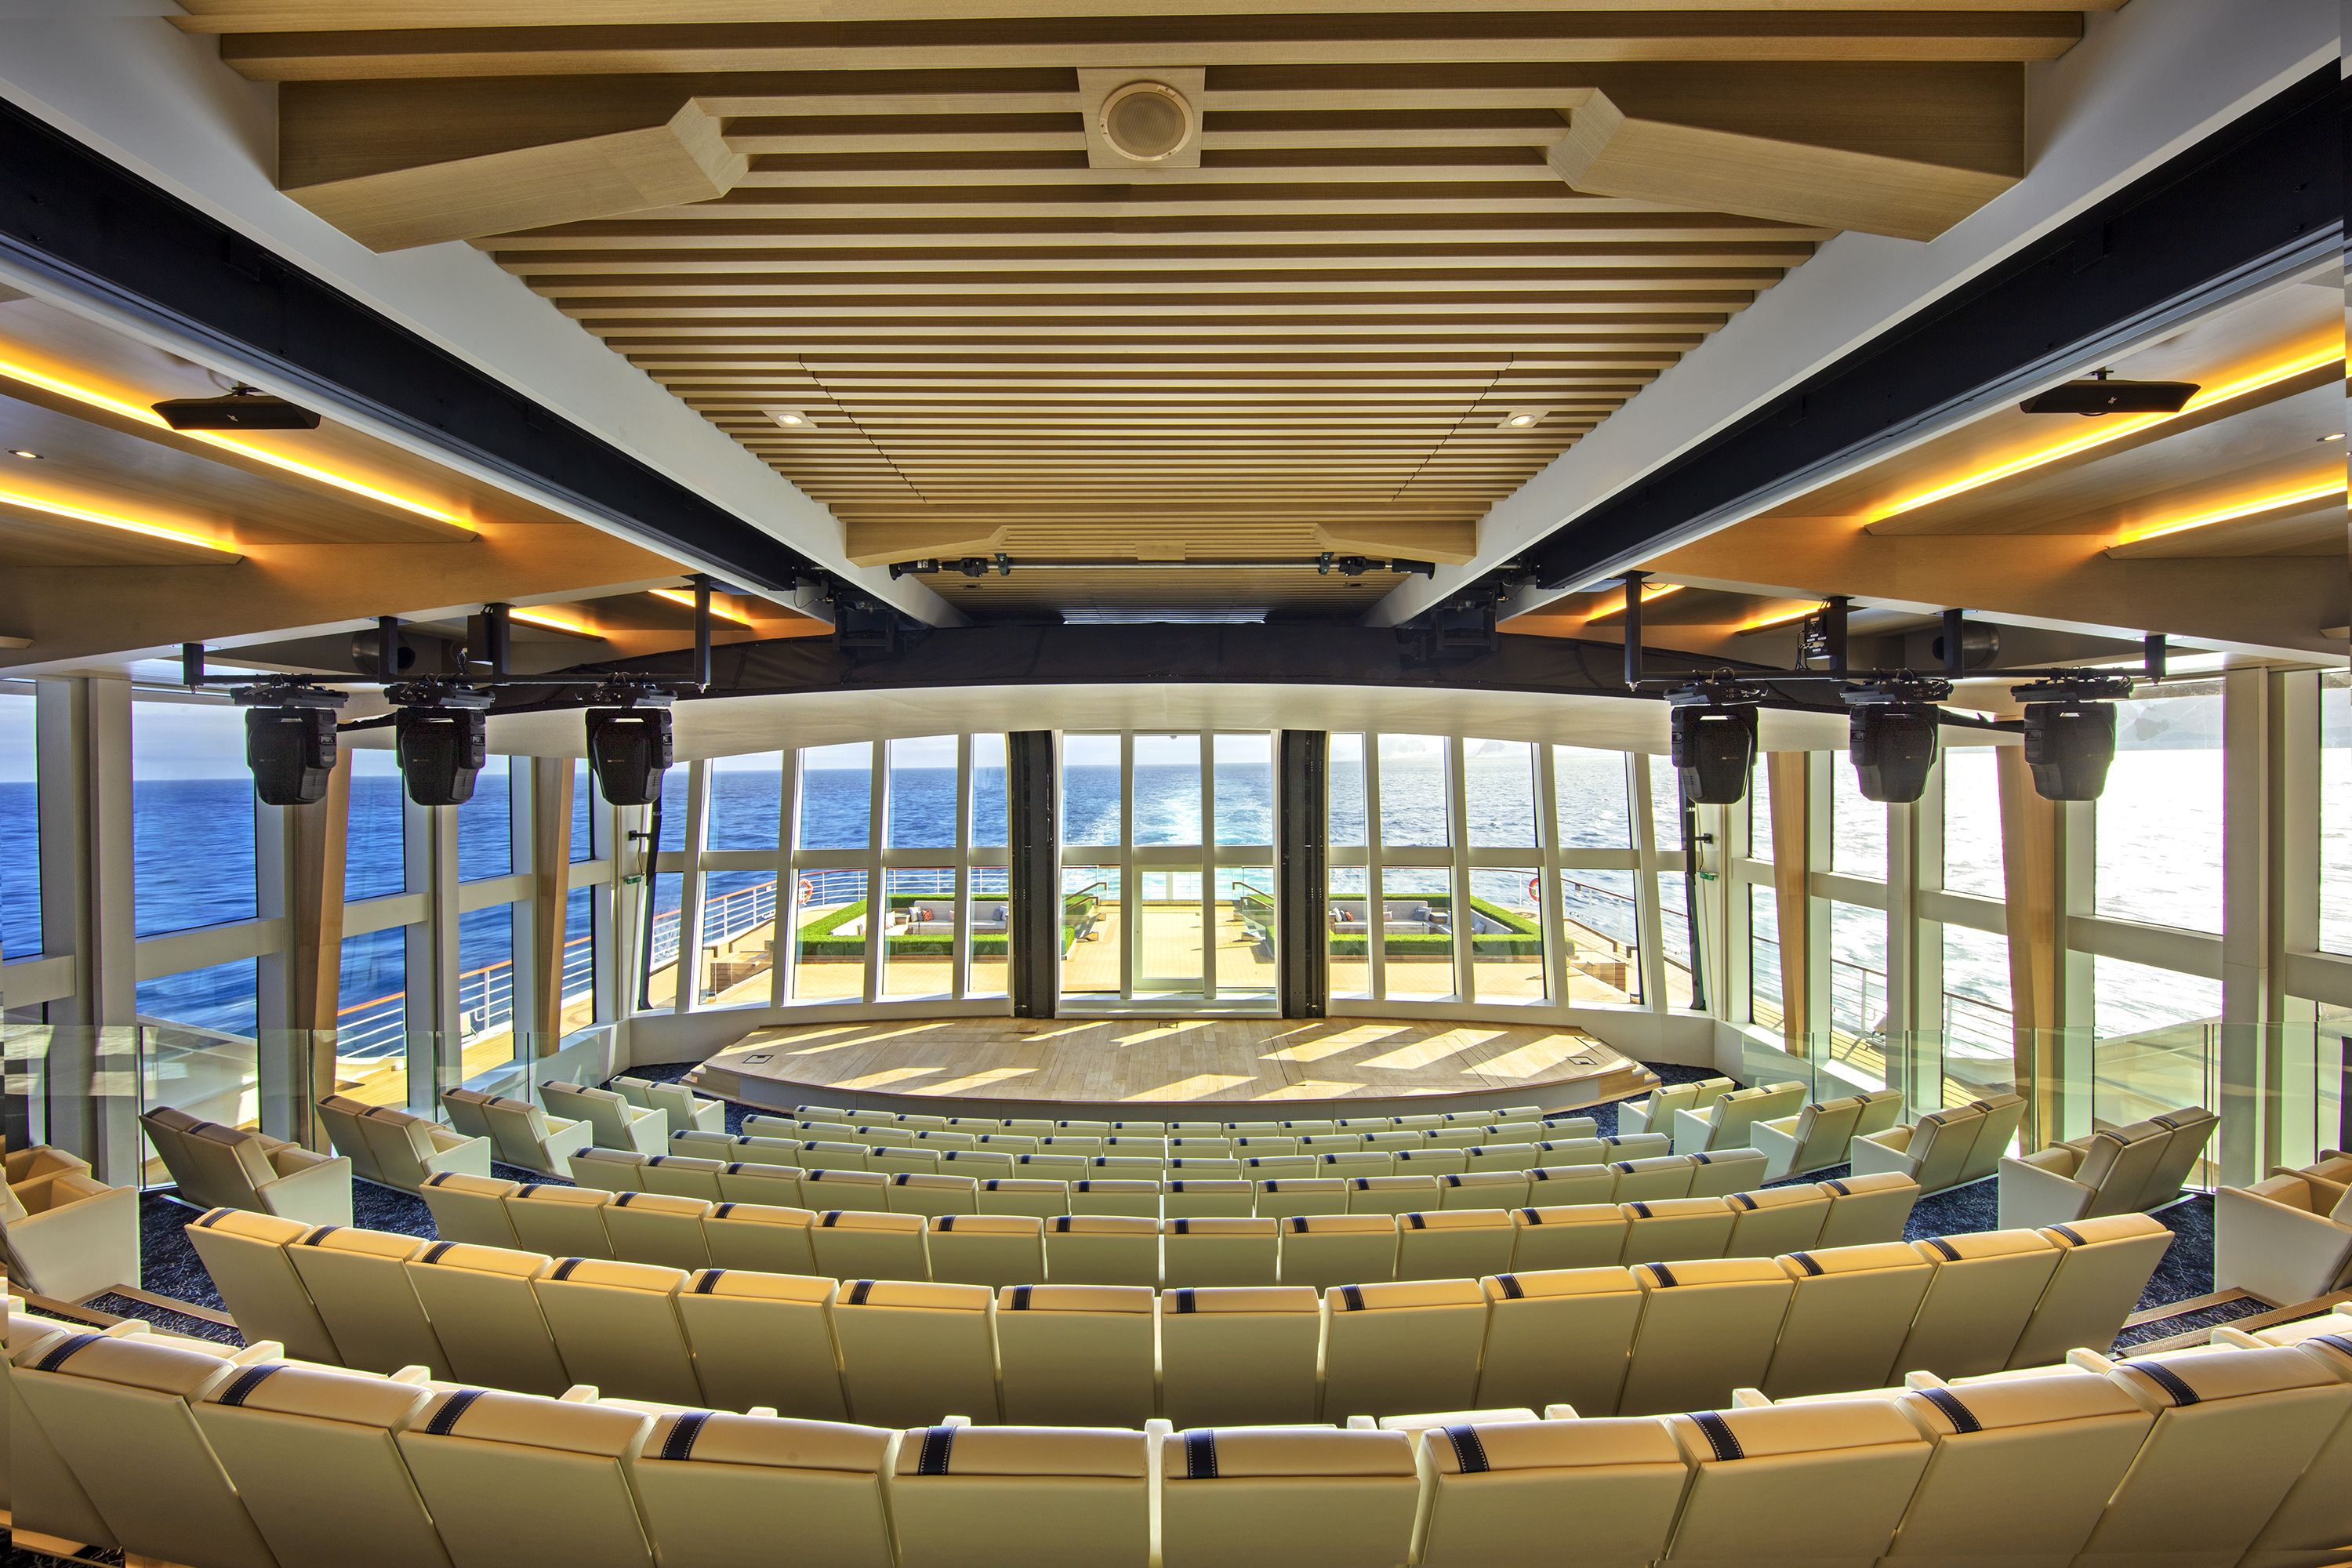  Aula panoramic auditorium